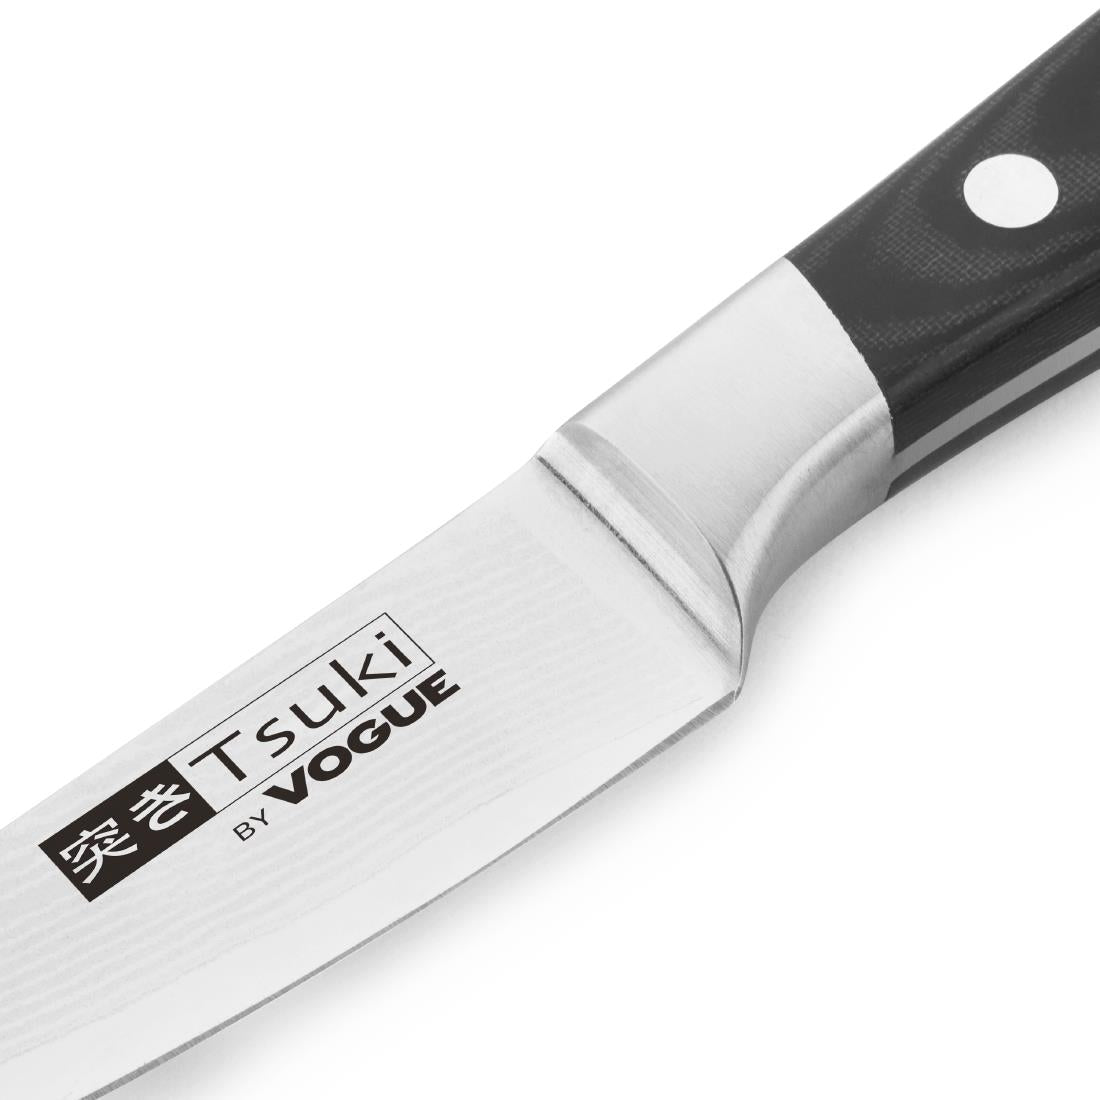 Tsuki Series 7 Paring Knife 9cm